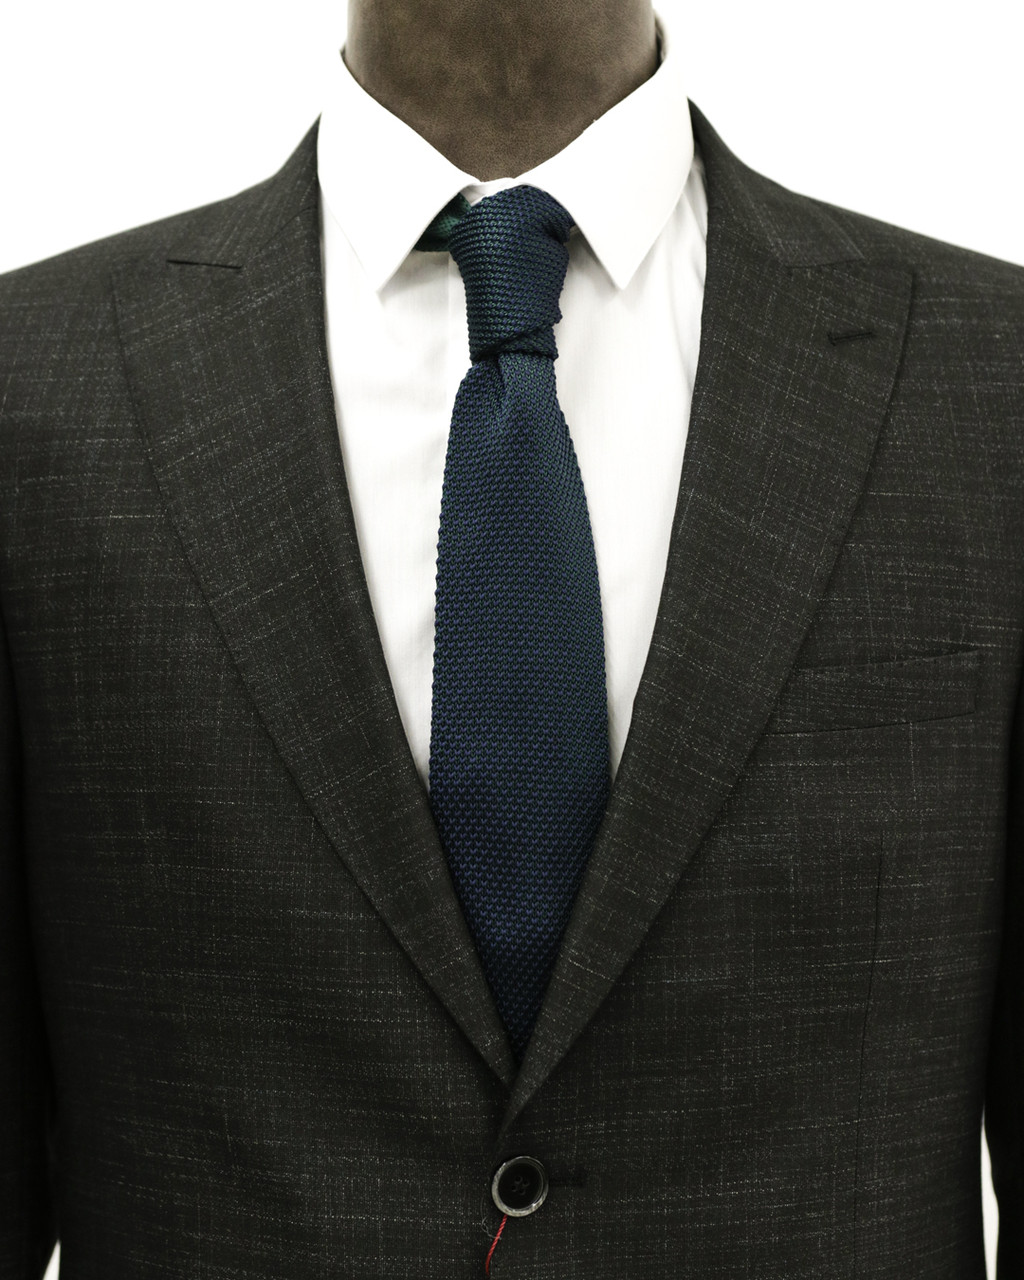 Мужской галстук «UM&H jrs12» темно-синий (полиэстер), фото 1